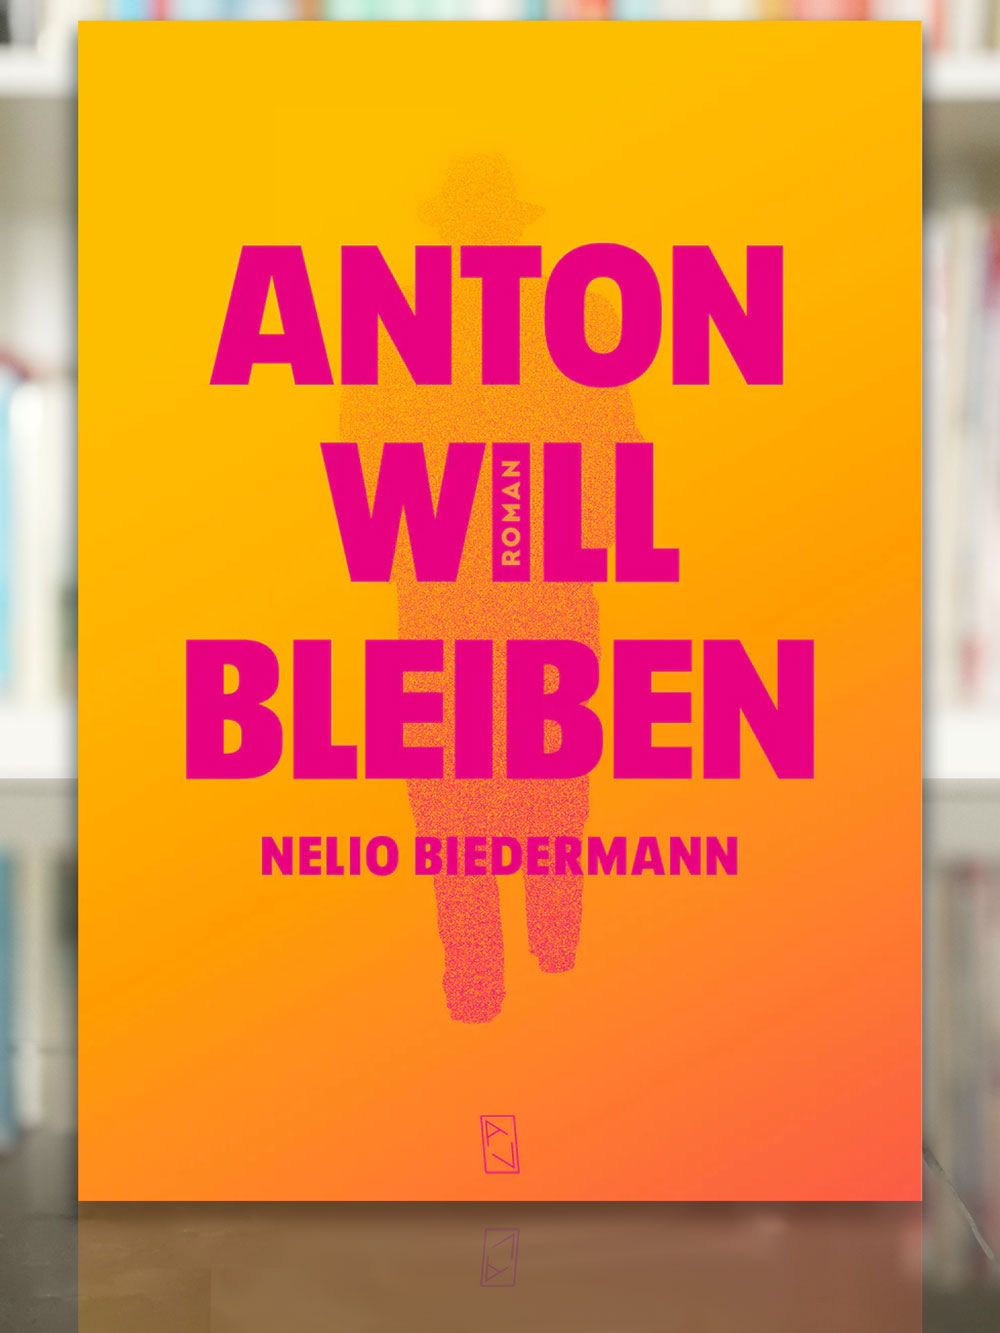 Anton will bleiben, Nelio Biedermann. 2023, Arisverlag